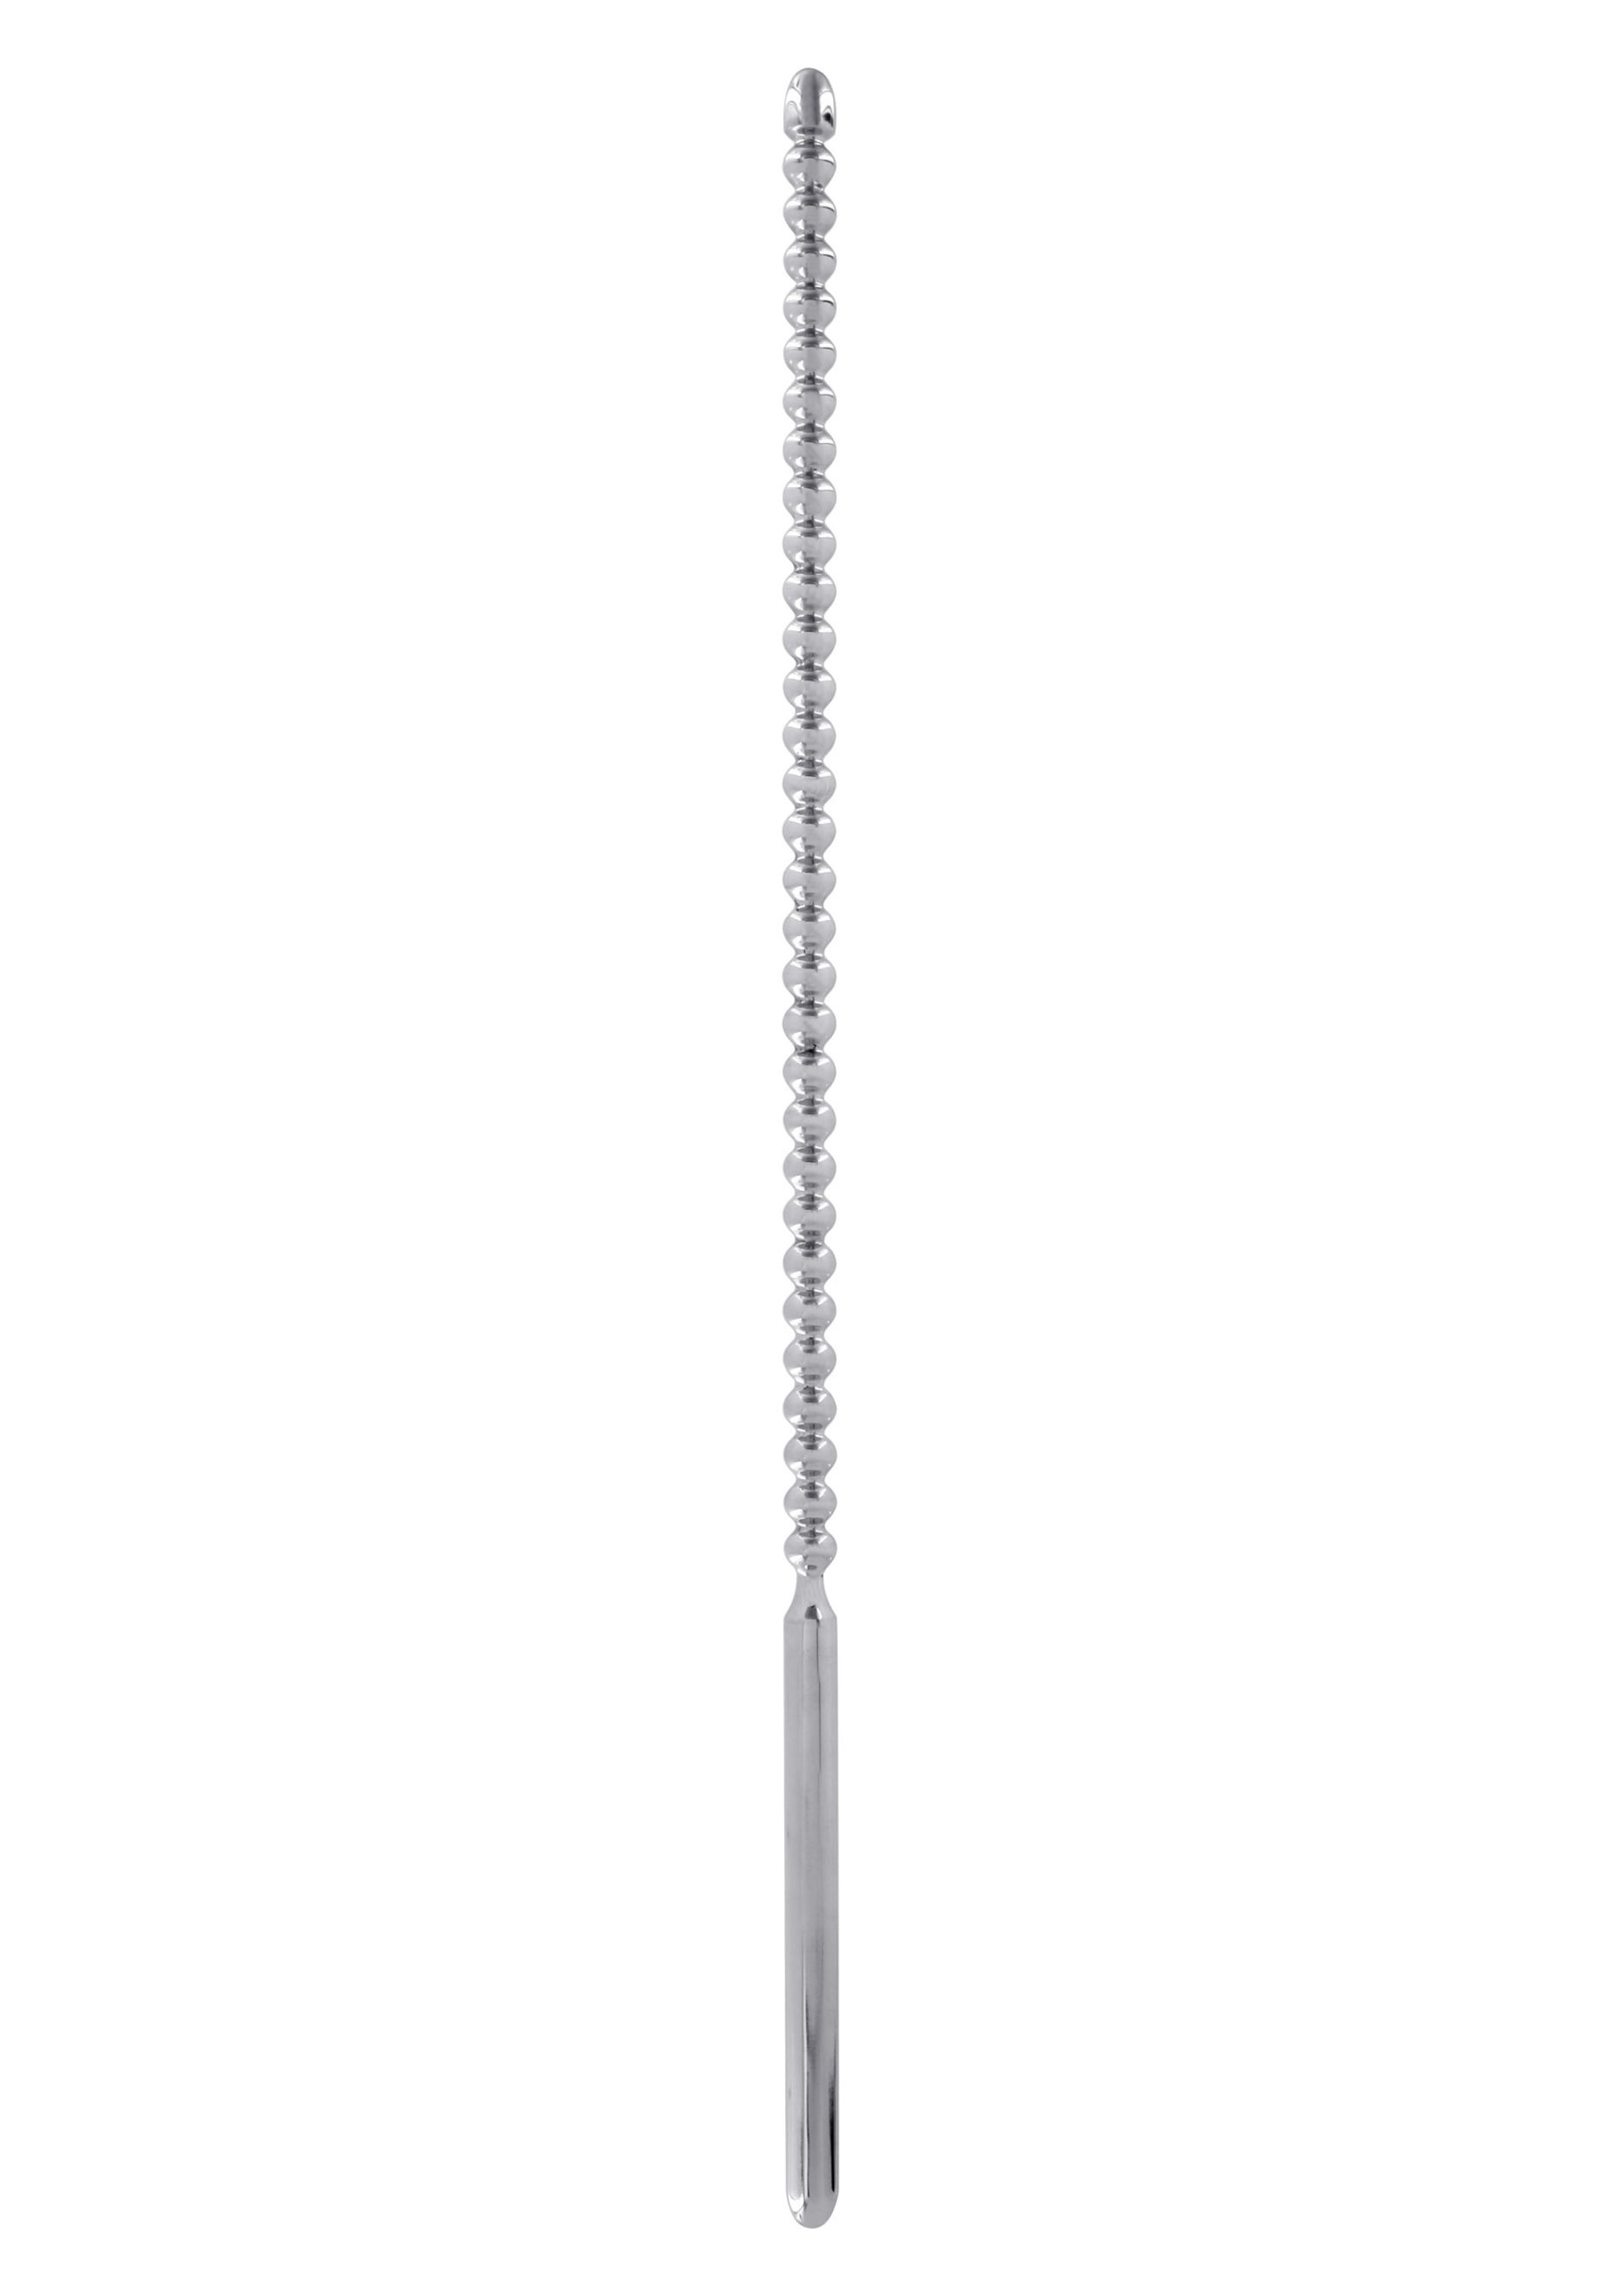 Dilator do cewki moczowej penisa stalowy plug 6 mm